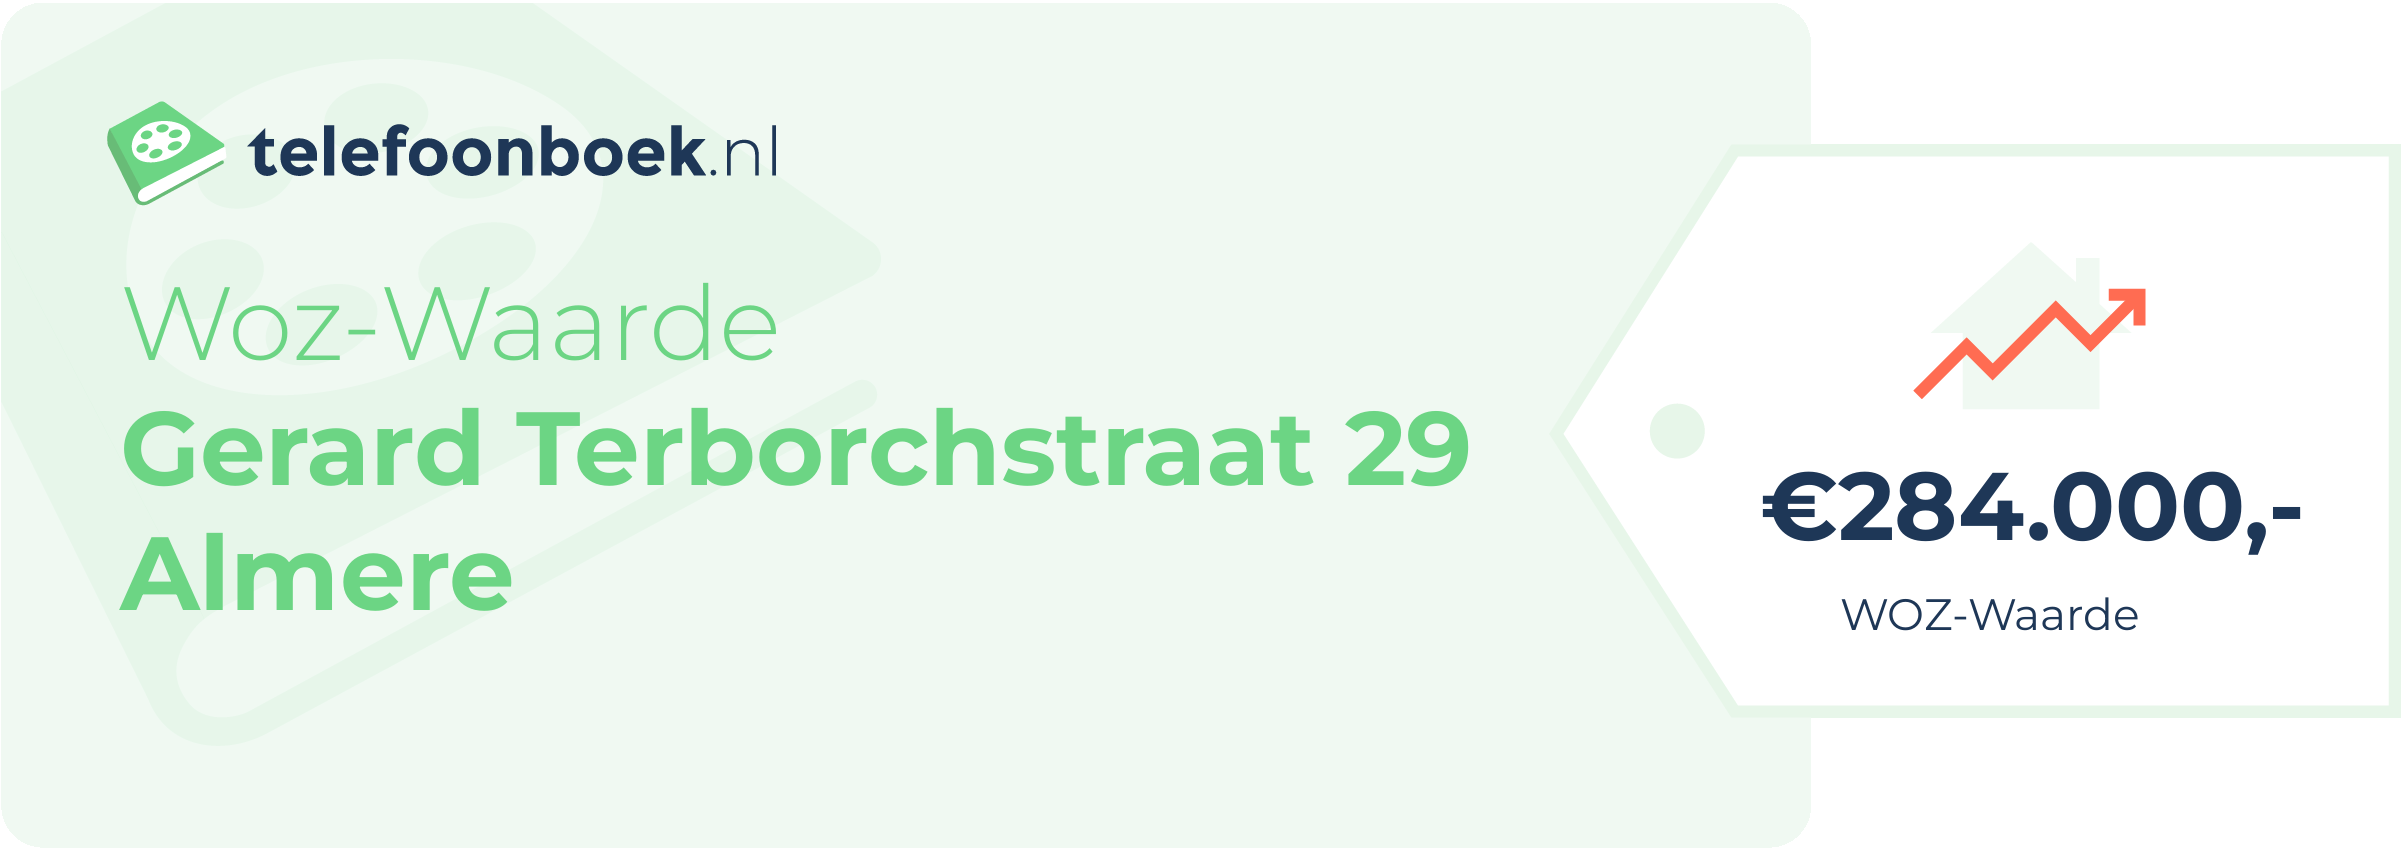 WOZ-waarde Gerard Terborchstraat 29 Almere